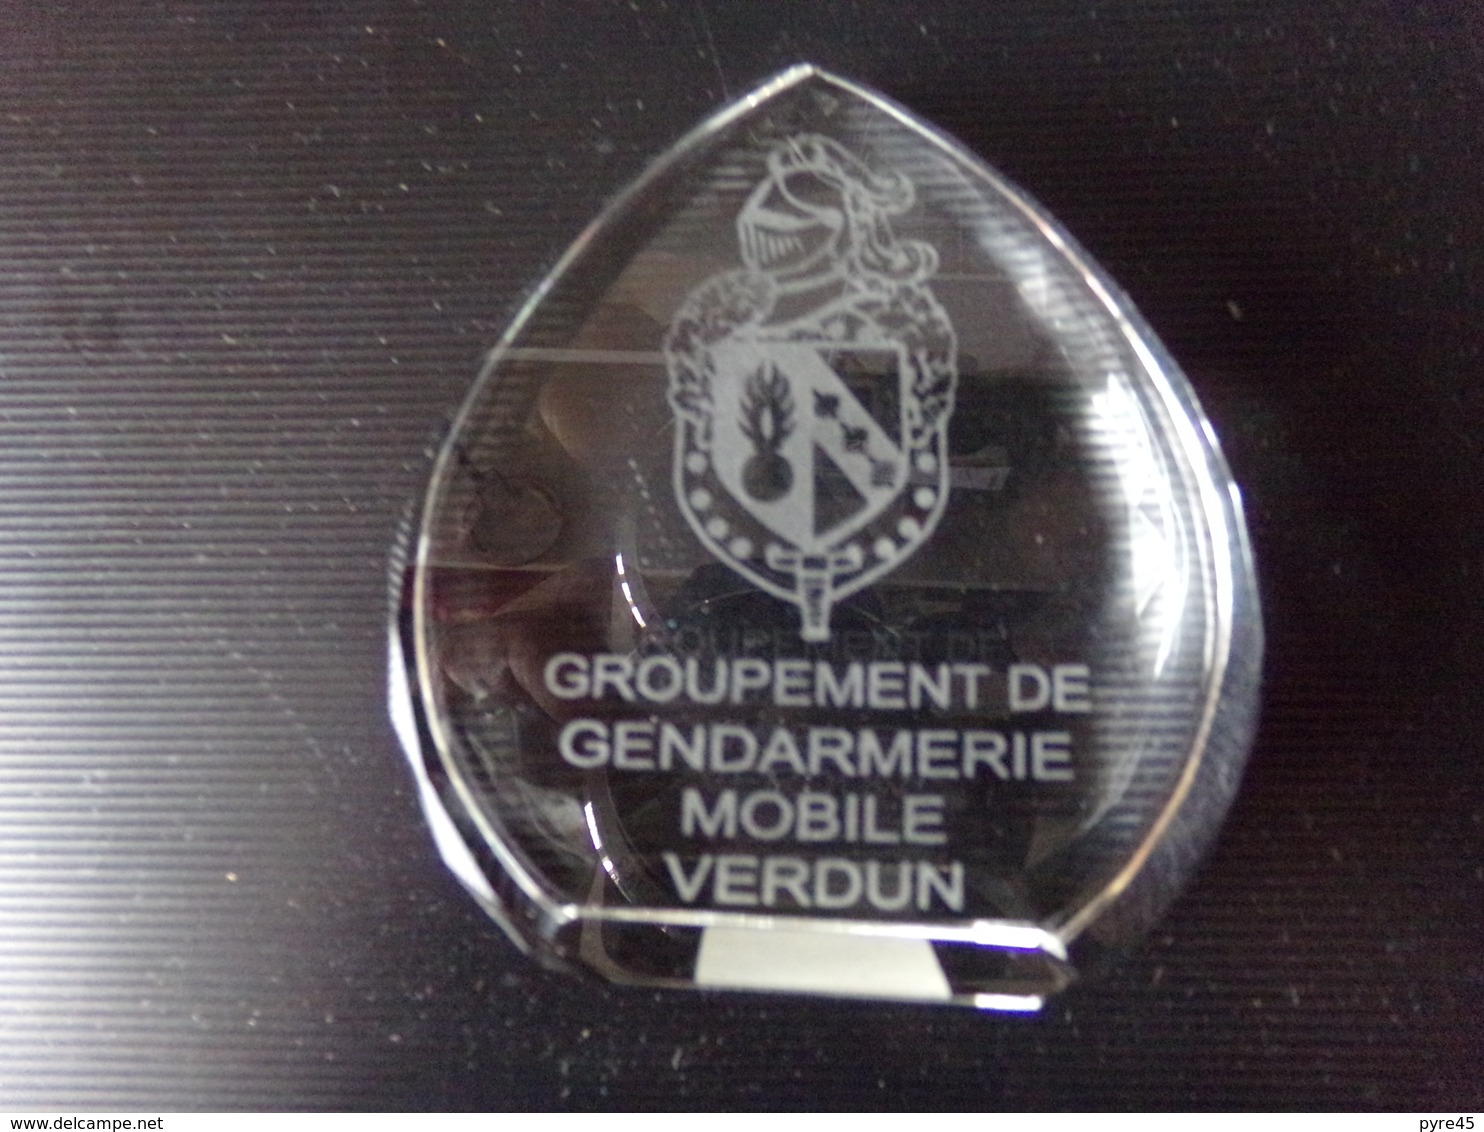 Groupement De Gendarmerie Mobile Verdun Grave Sur Un Support En Cristal 8 X 7,5 X 2,5 Cm260 Gr - Police & Gendarmerie